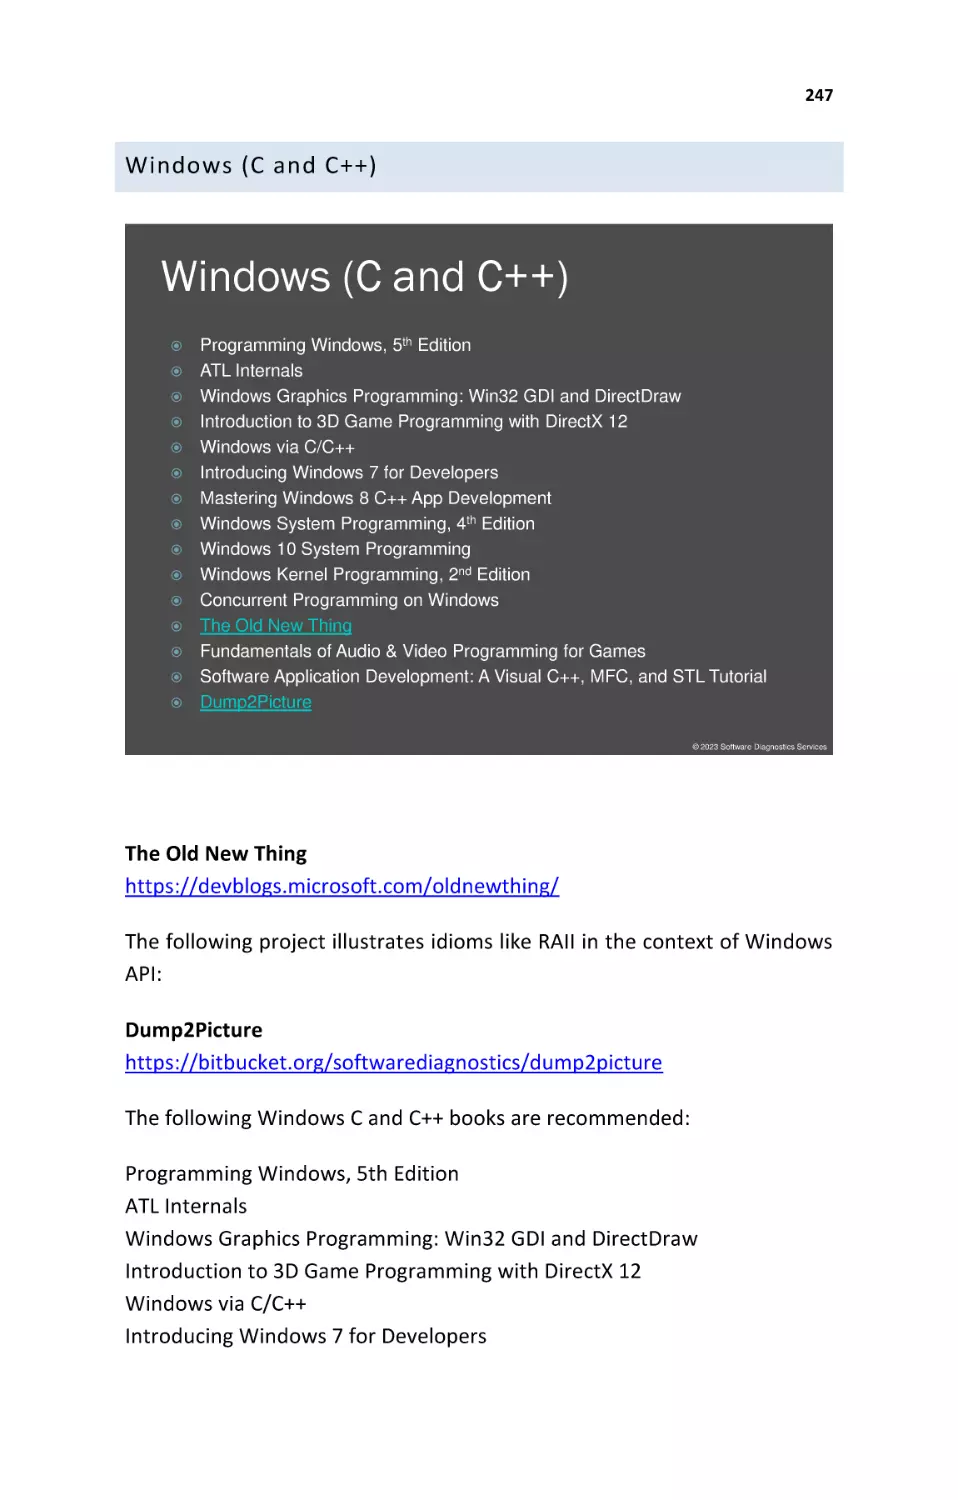 Windows (C and C++)